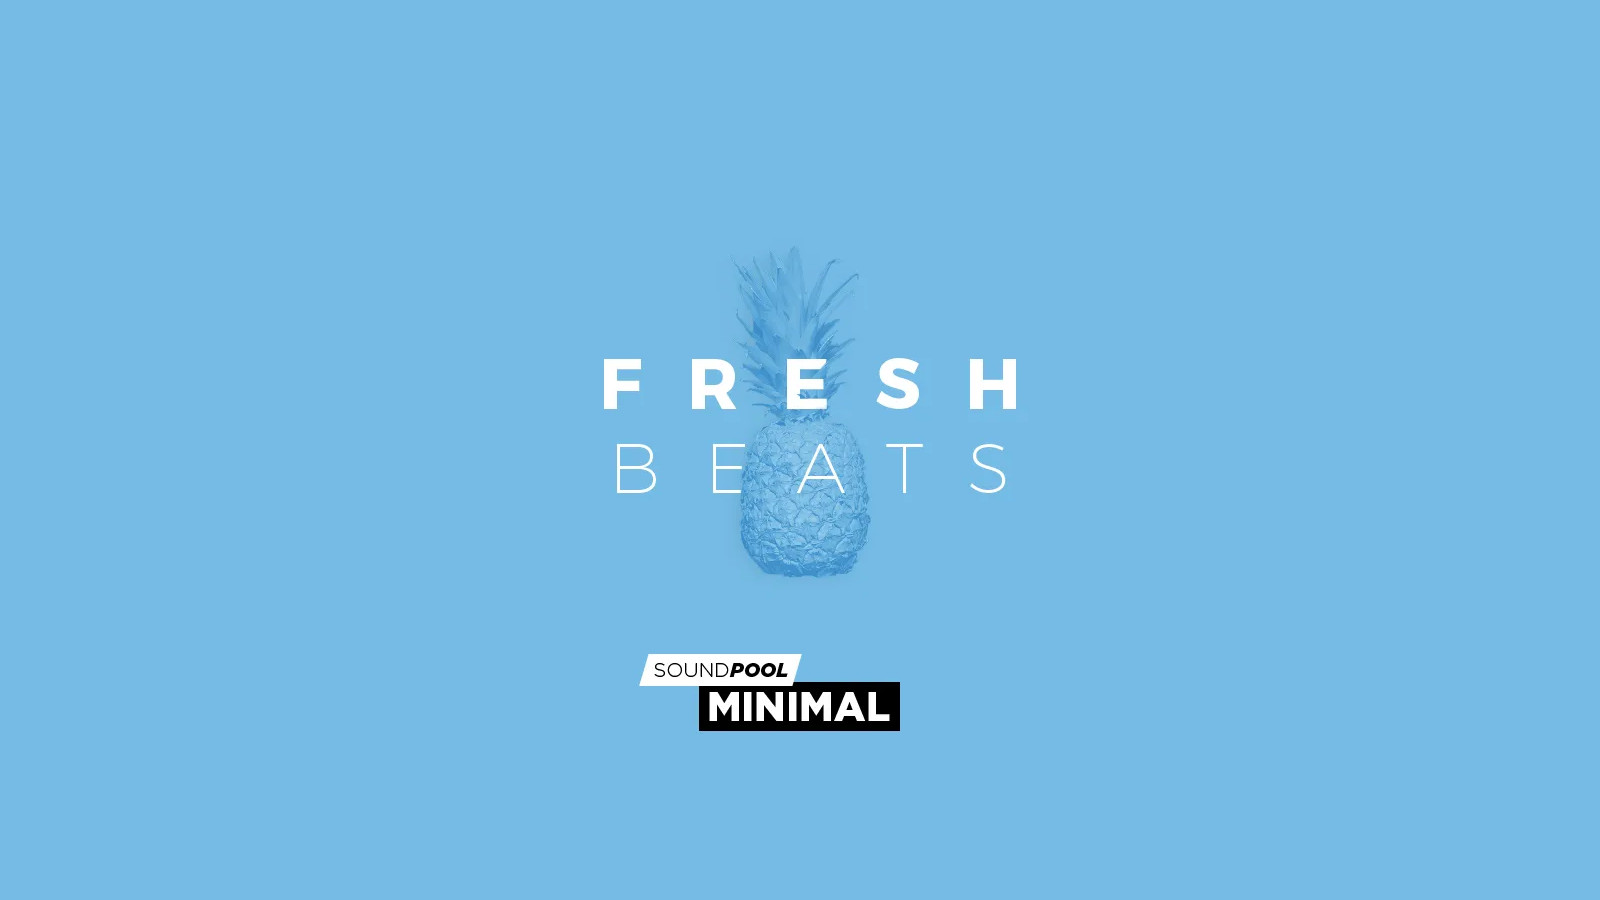 MAGIX Soundpool Fresh Beats ProducerPlanet CD Key 5.65 usd